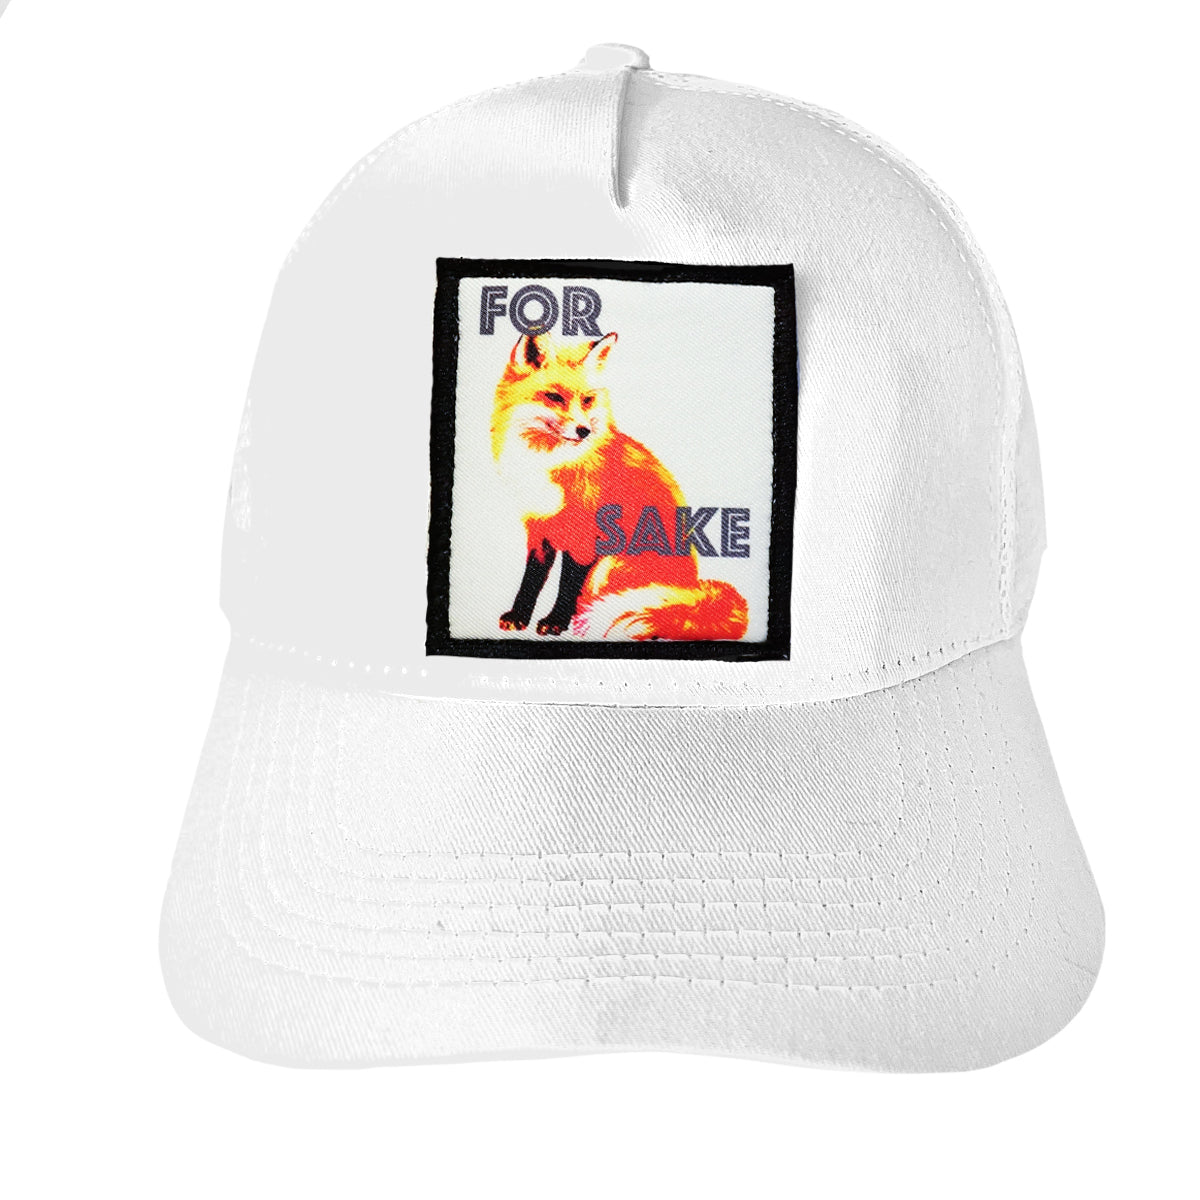 FOR FOX SAKE HAT